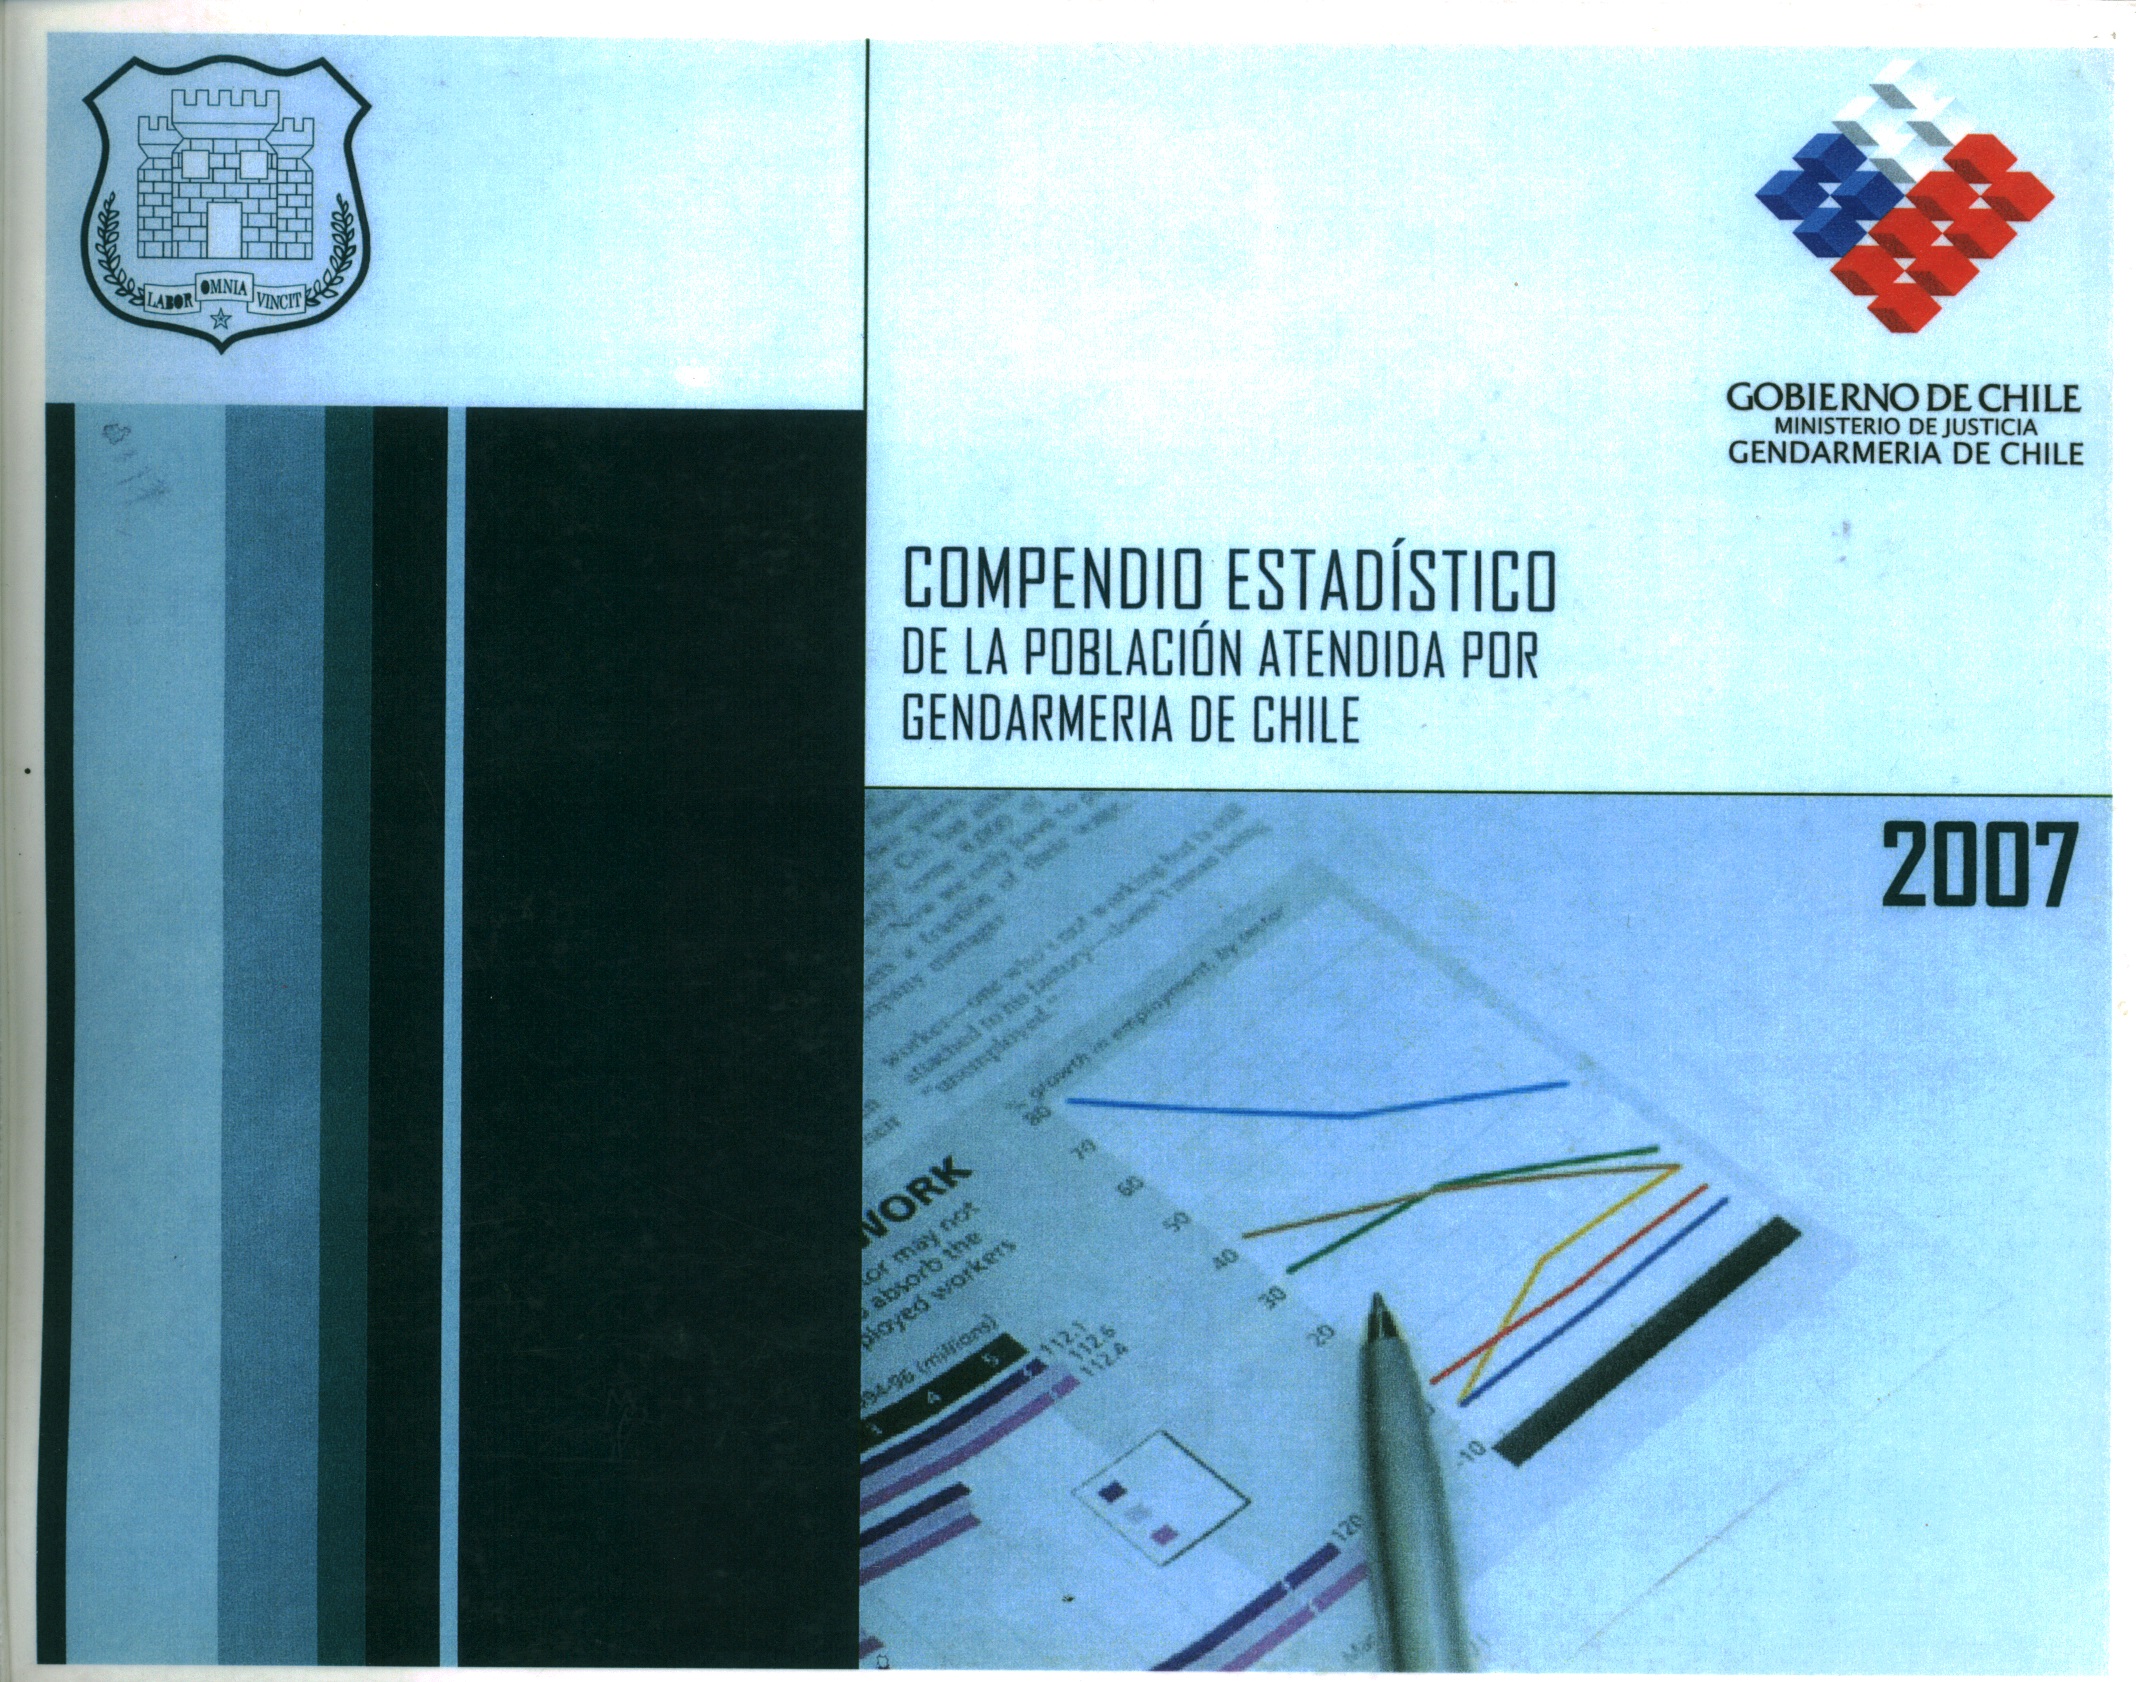 Compendio estadístico de la población atendida por la Gendarmería de Chile.